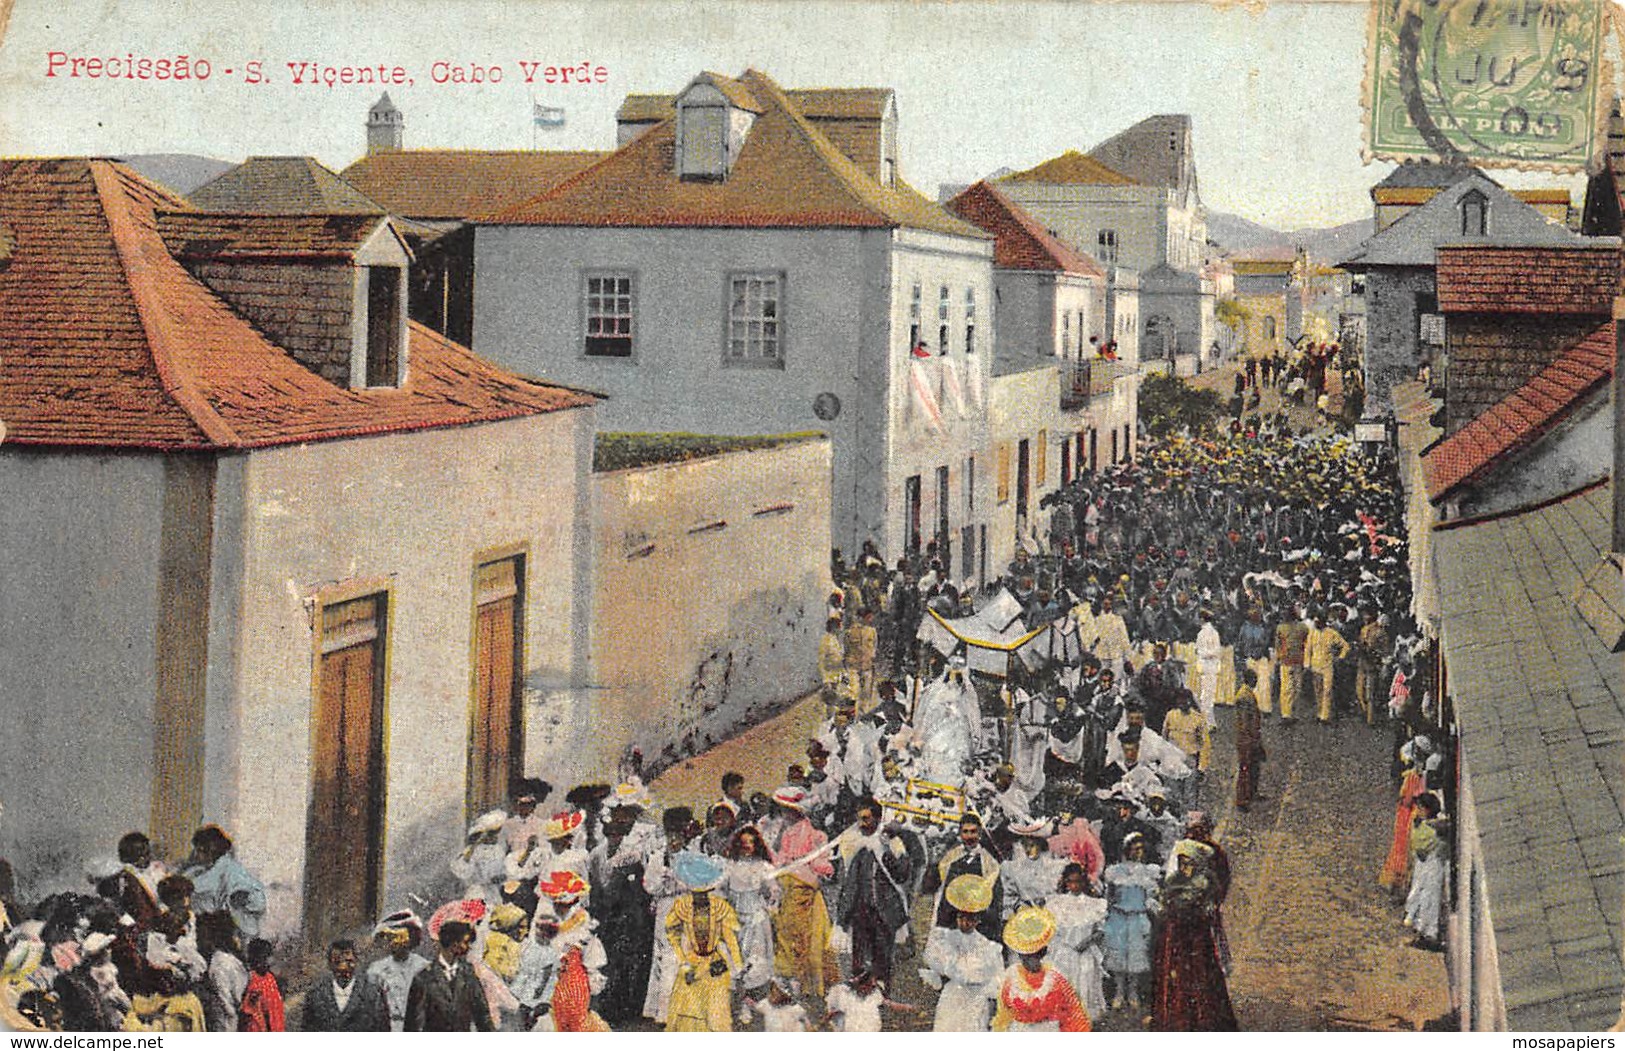 Precissao - S. Vicente, Cabo Verde - Capo Verde